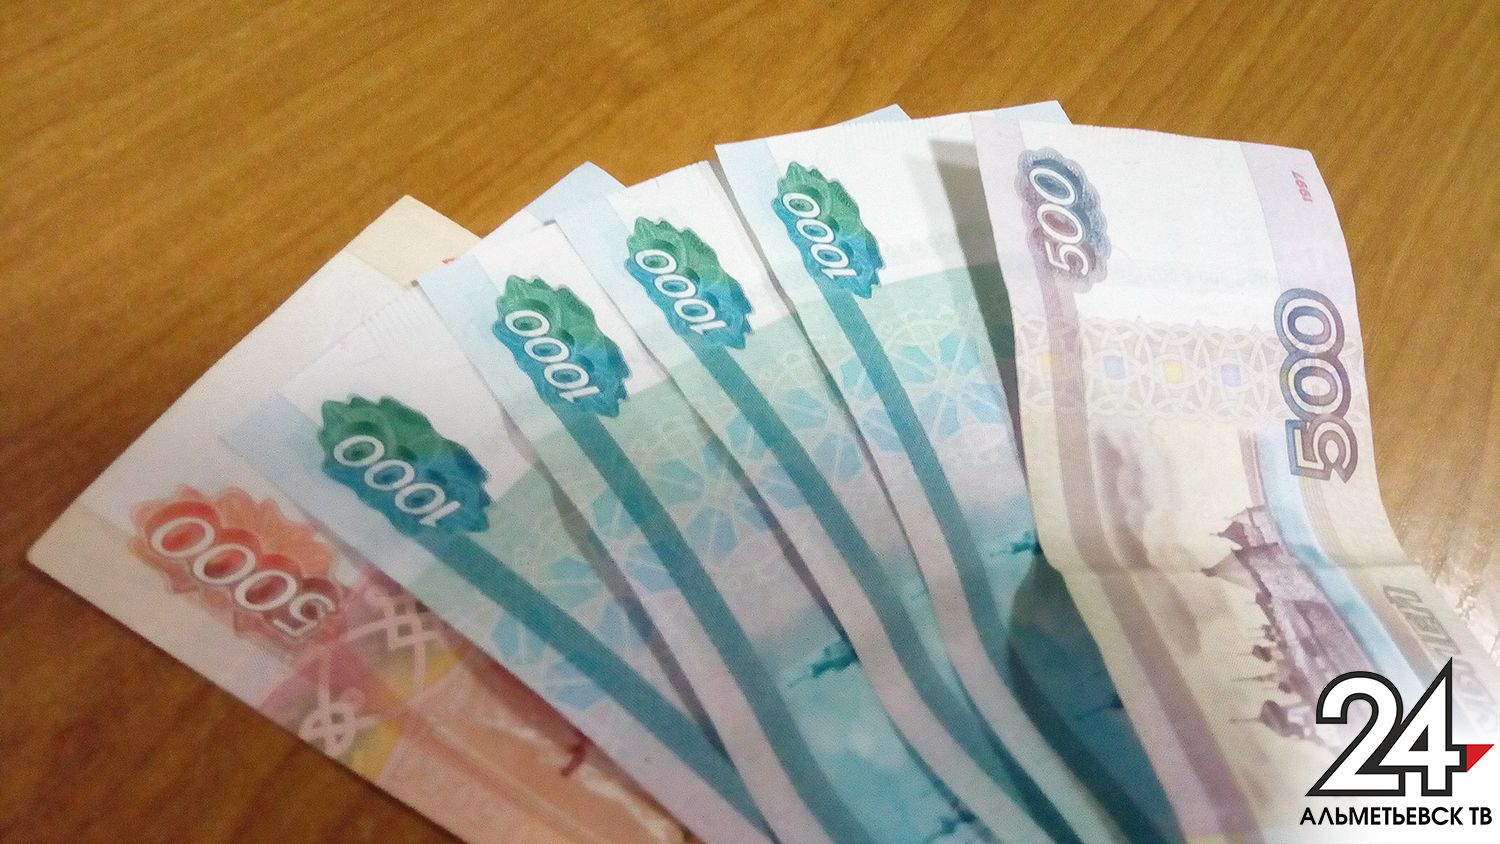 Сотрудница почты в Альметьевске присвоила пенсии на 217 тысяч рублей